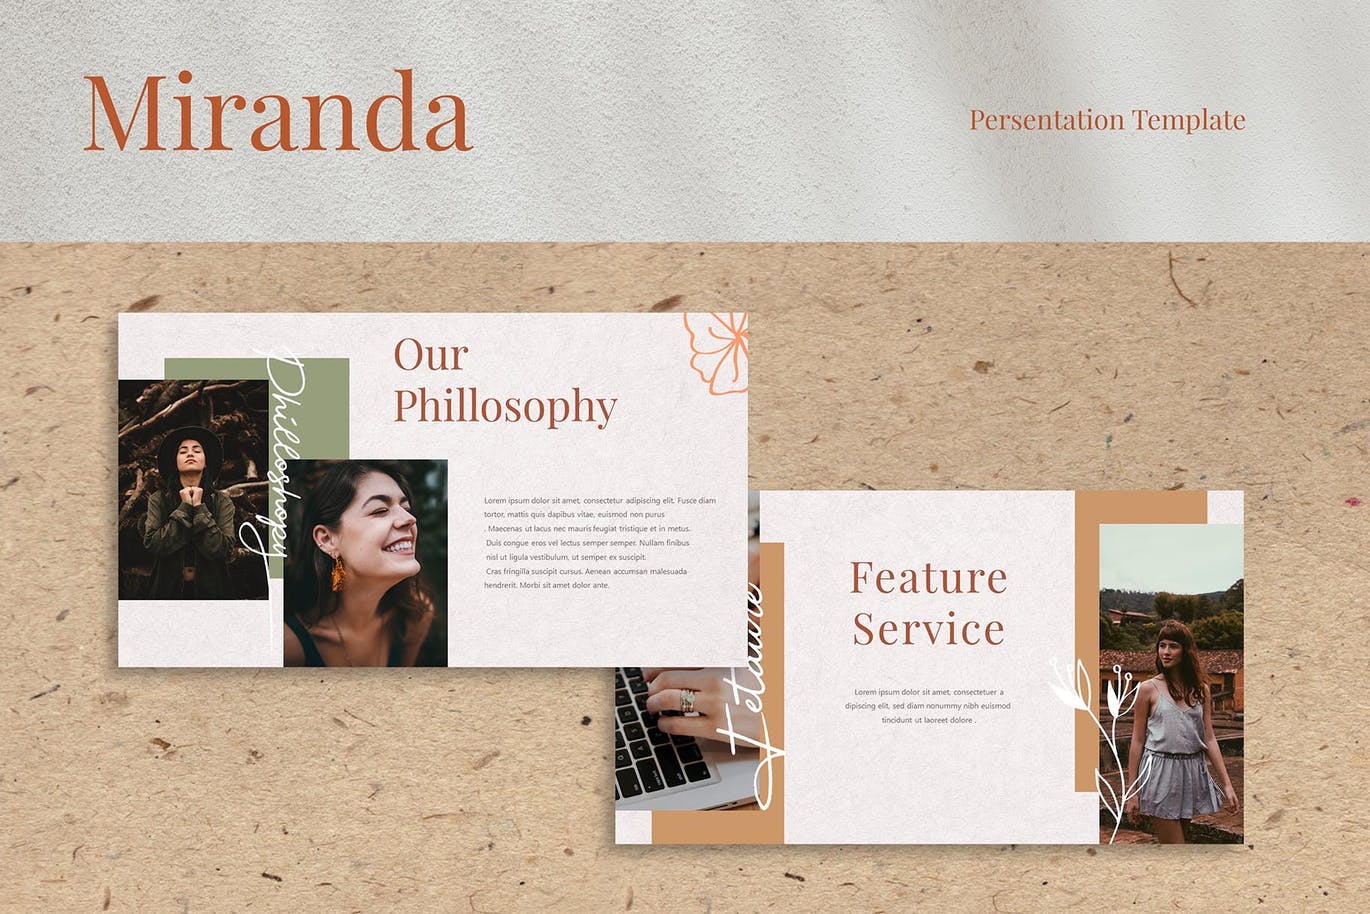 摄影工作室宣传业务Powerpoint模板下载 Miranda – Powerpoint Template设计素材模板